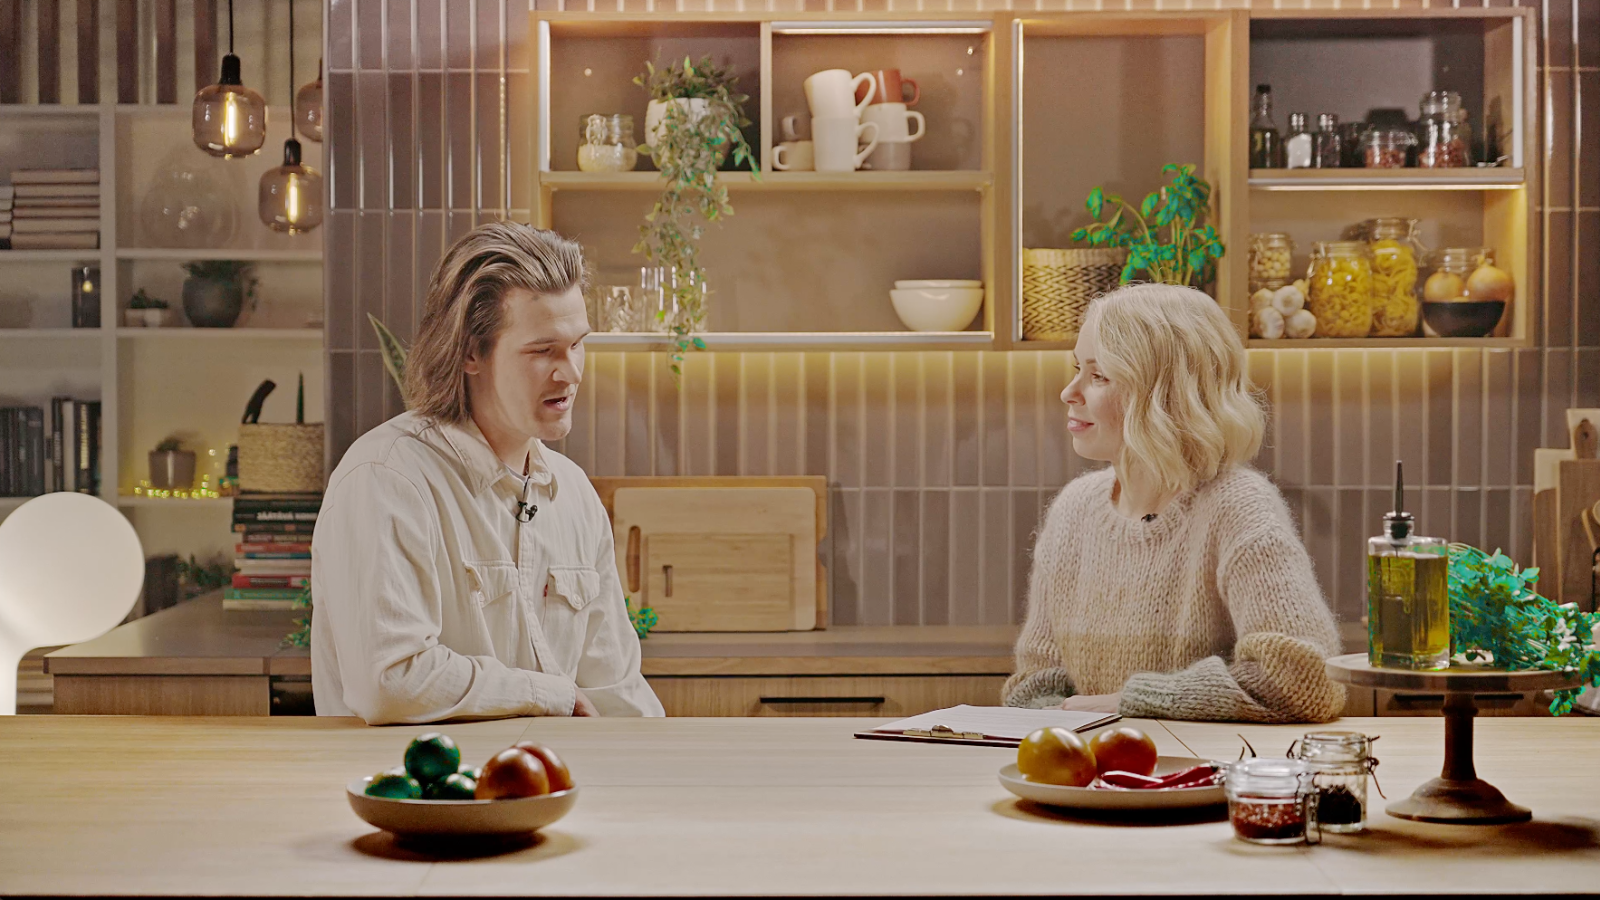 Eetu Patronen Ässästudion keittiössä toimittaja Minna Perovuon haastateltavana. Pöydällä hedelmiä. Taustalla hyllyjä, joissa muun muassa kahvikuppeja, kippoja, mausteita ja lasipurnukoita.